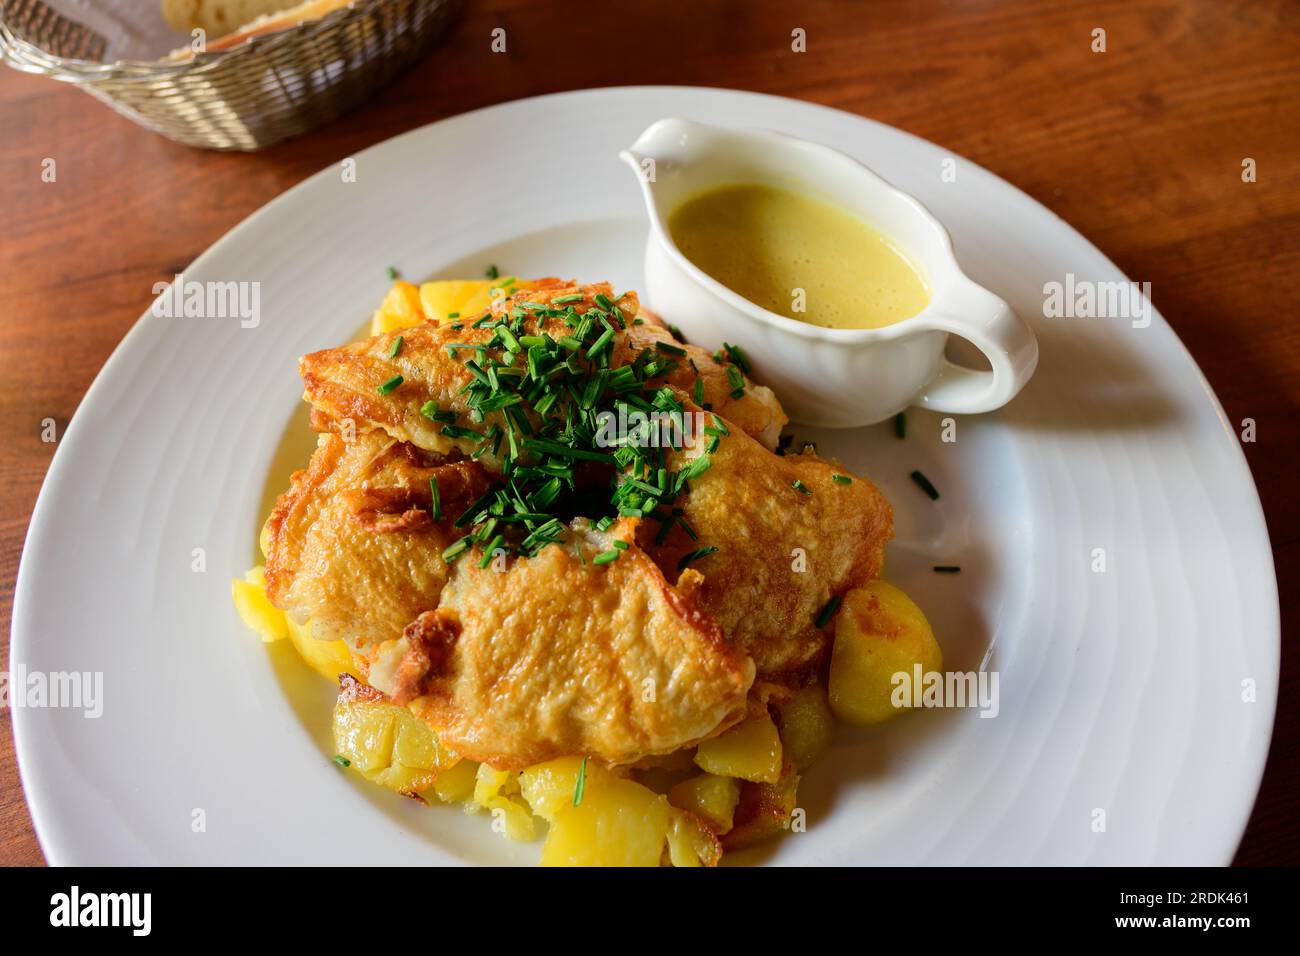 Hamburger Pannfisch, piatto tradizionale di Amburgo con pesce fritto, patate arrosto e salsa di senape Foto Stock